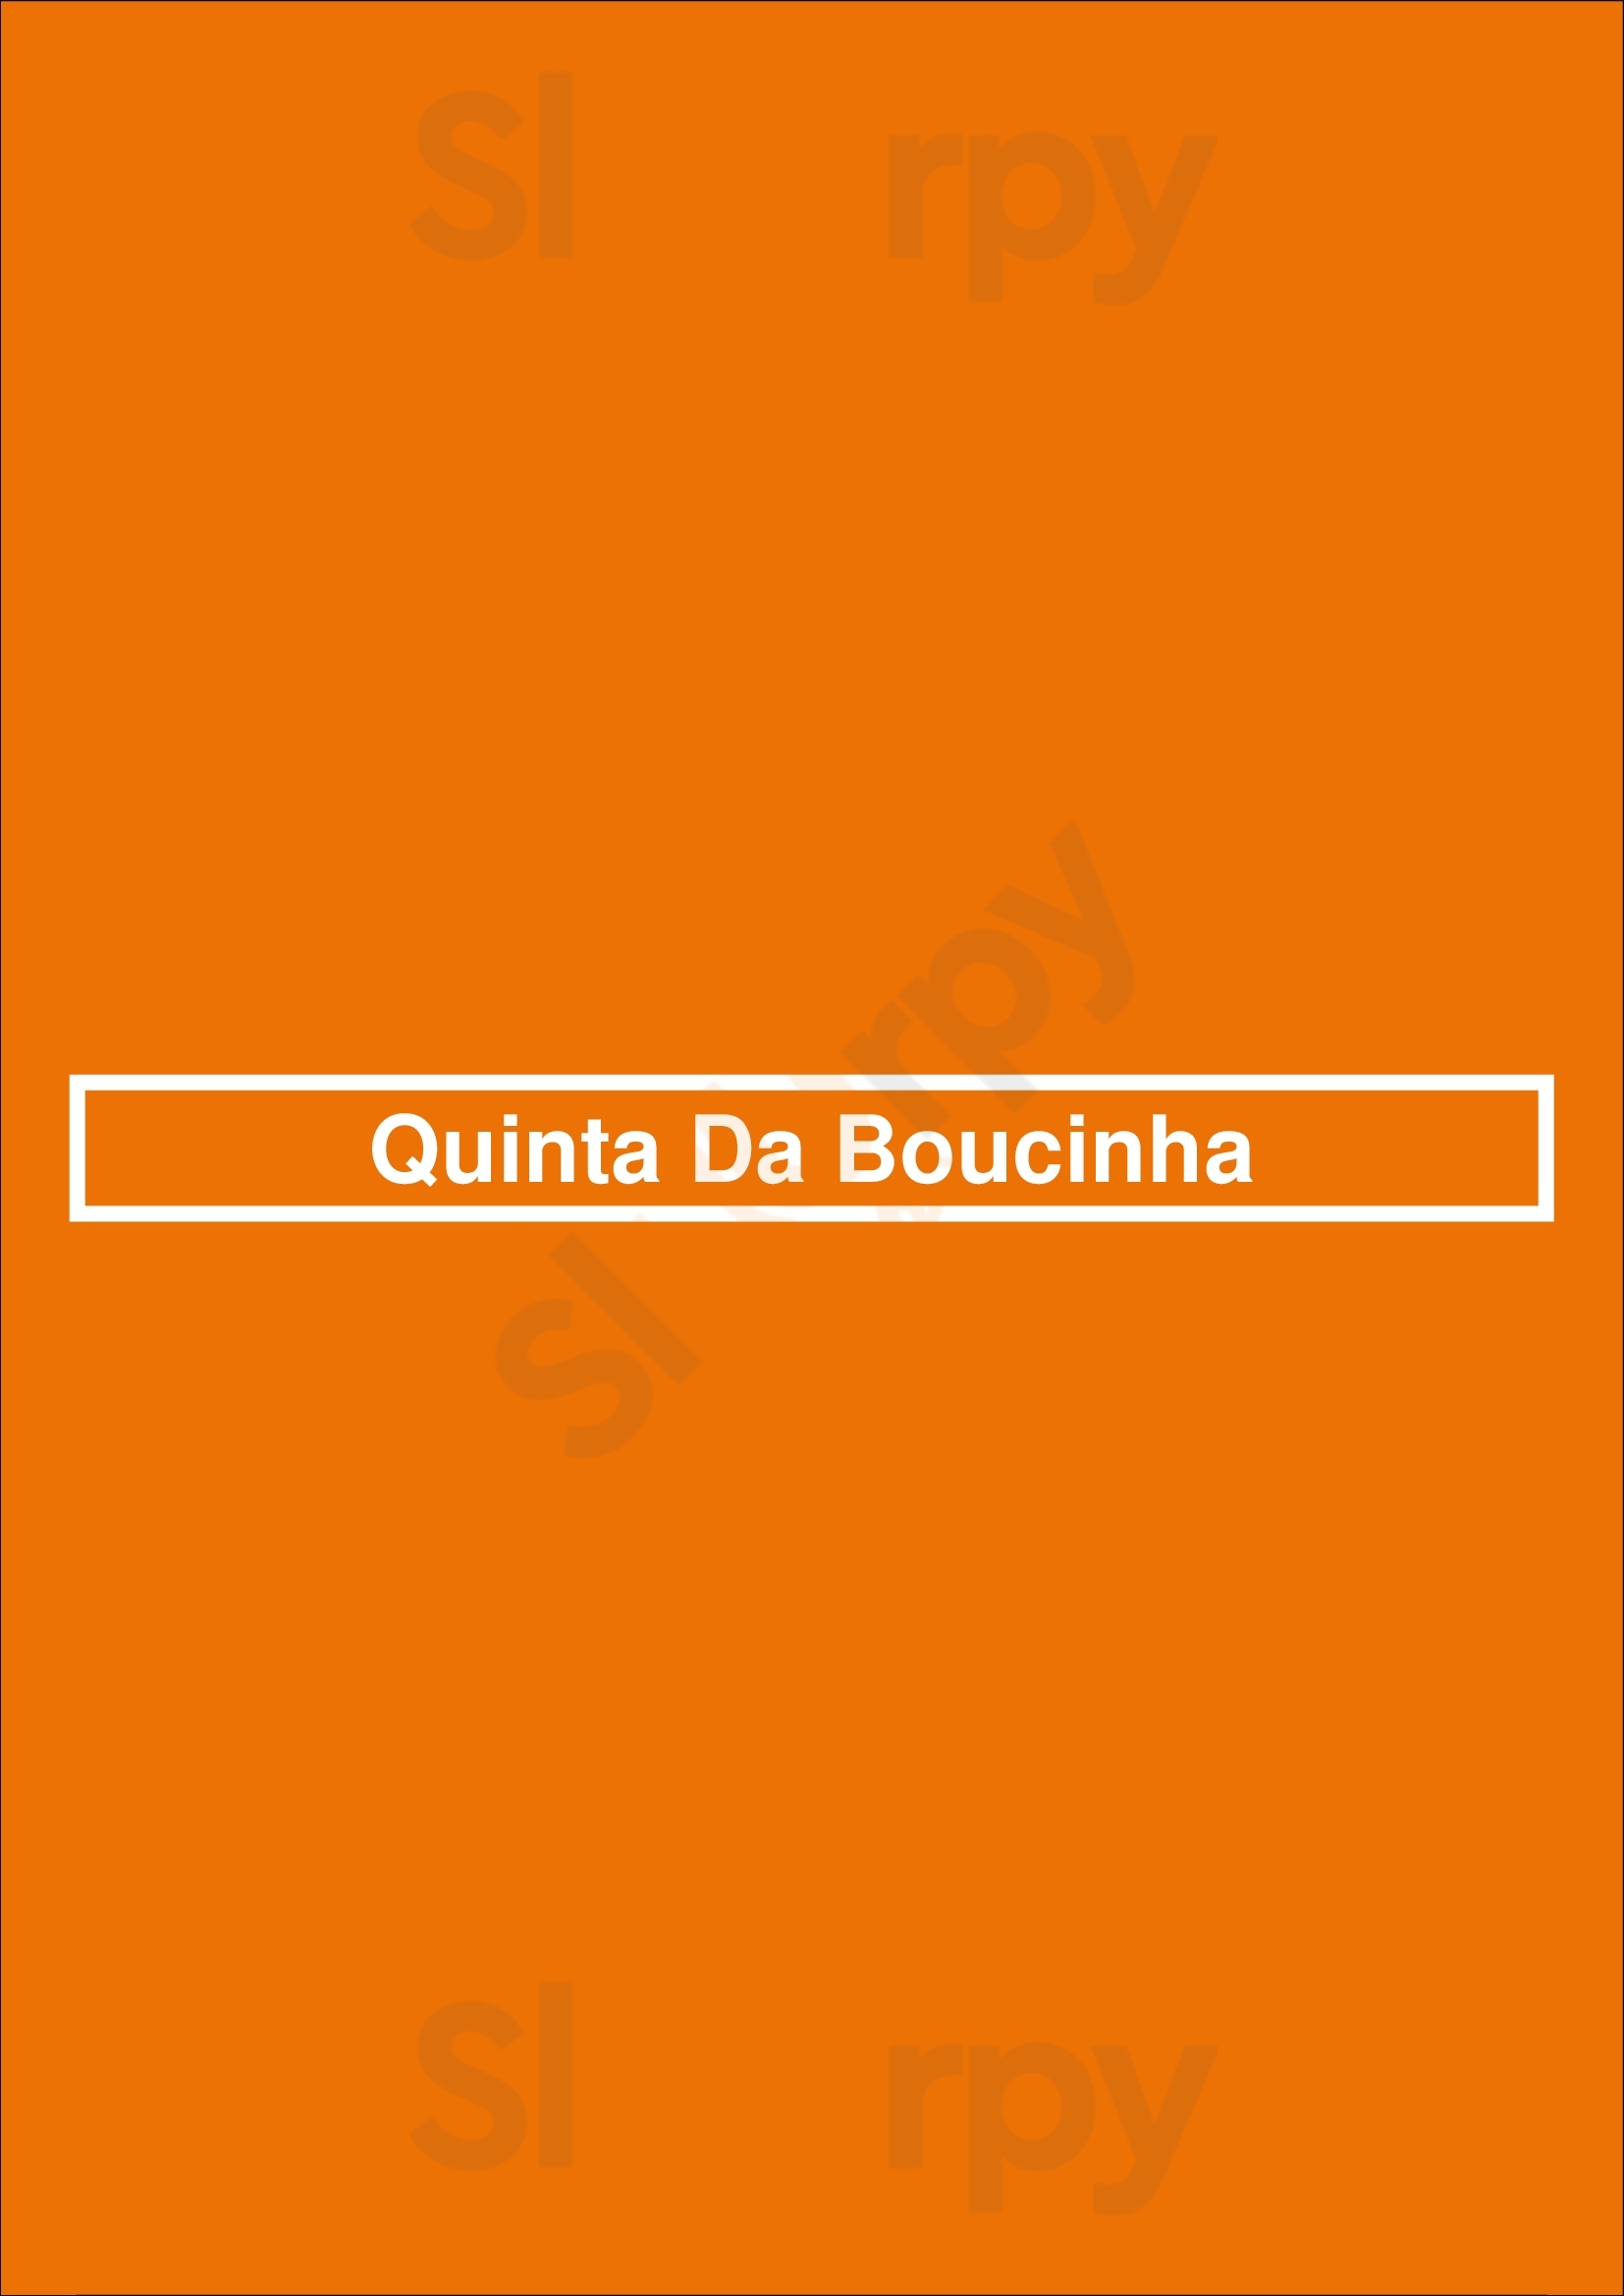 Quinta Da Boucinha Vila Nova de Gaia Menu - 1